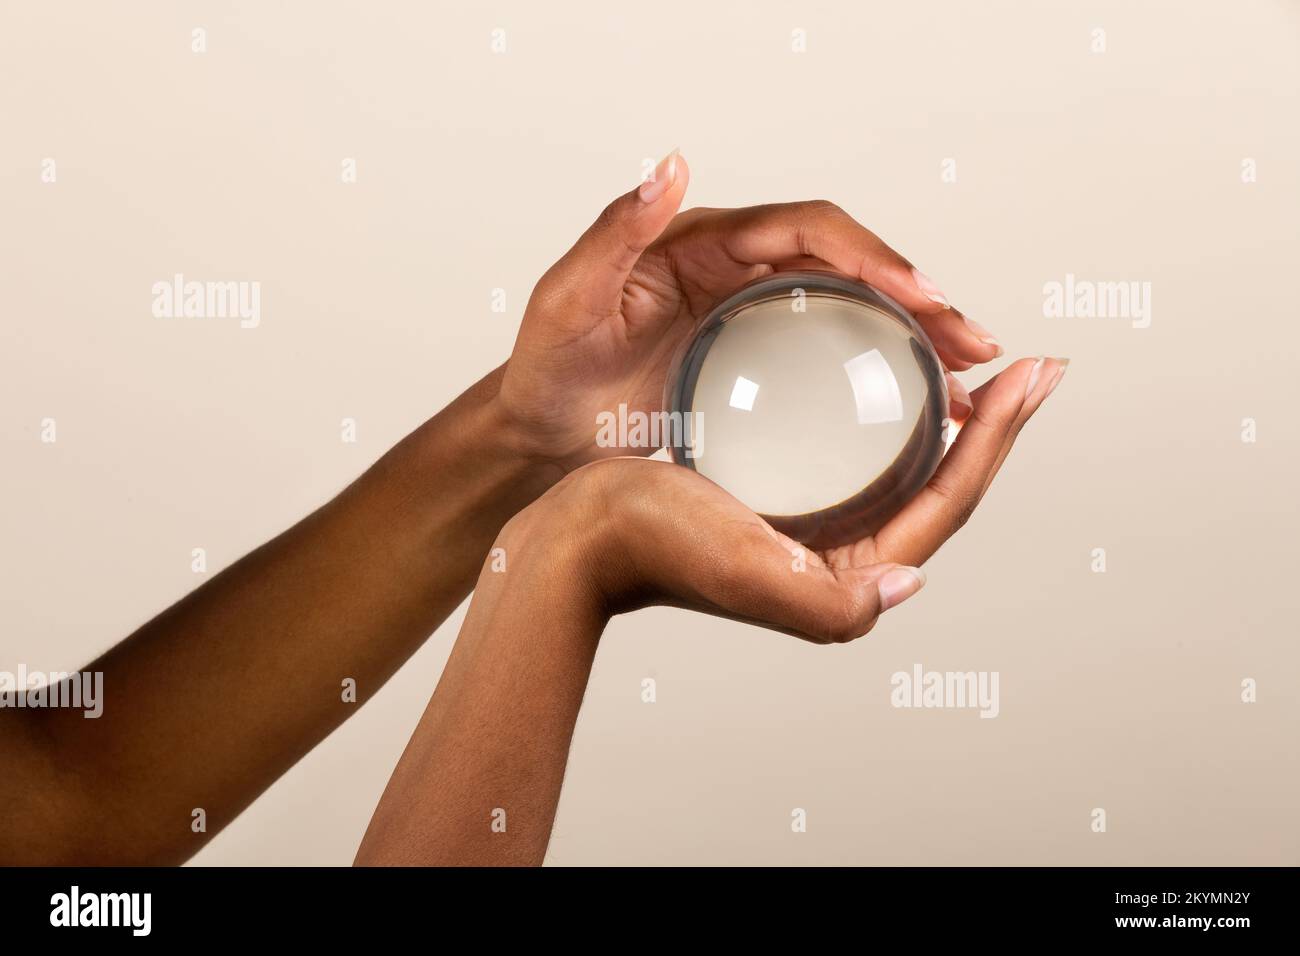 Manos de mujer negra sosteniendo una bola de cristal transparente con un ligero reflejo sobre fondo beige Foto de stock